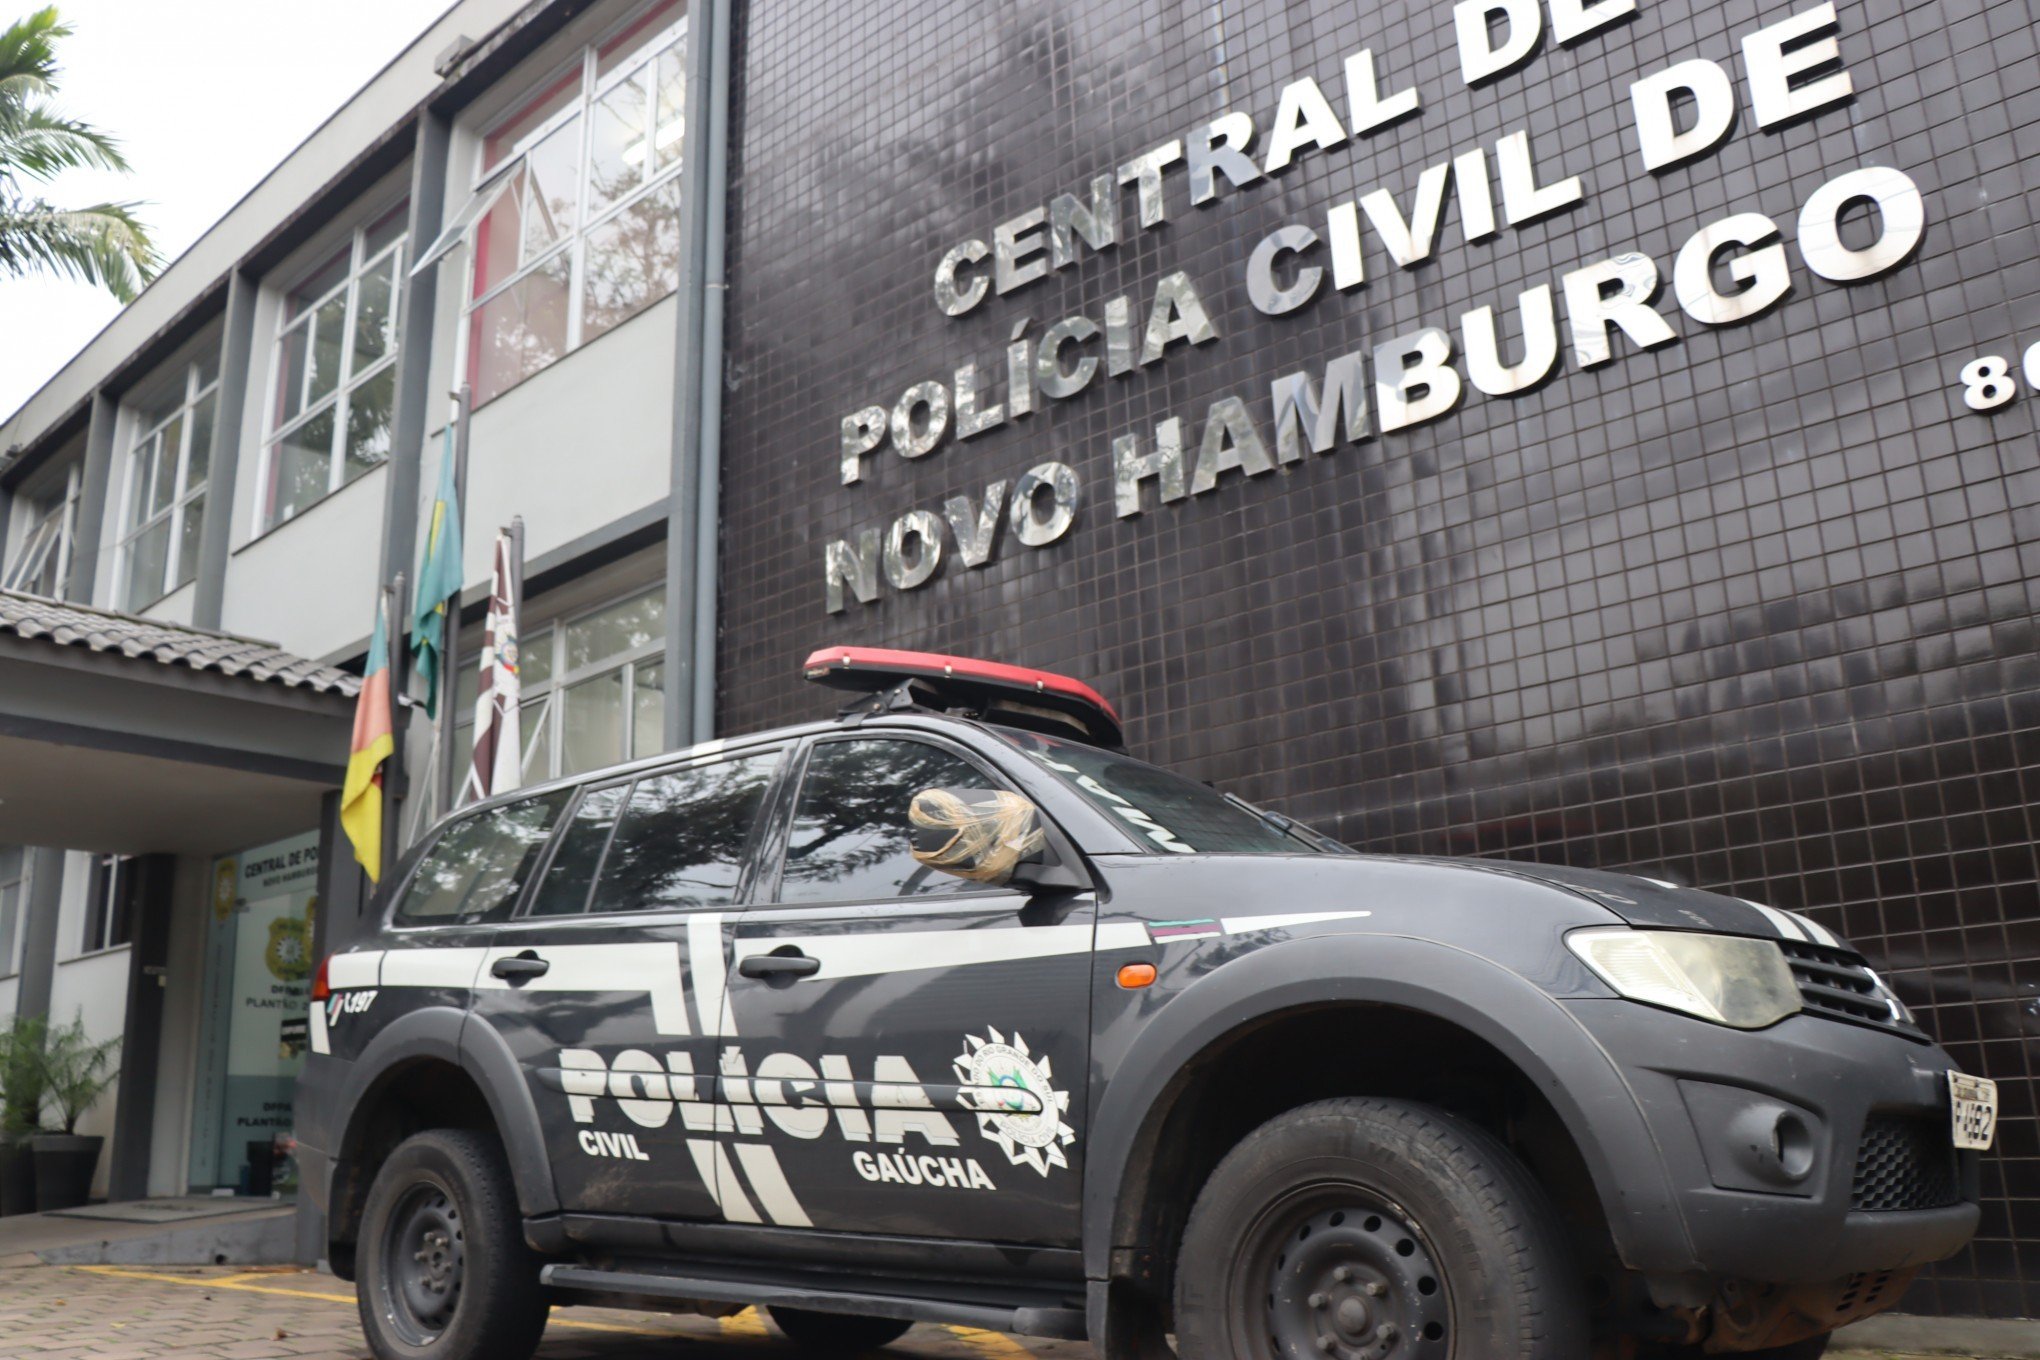 Taxista pega passageiro na frente de casa noturna e é assaltado em Novo Hamburgo